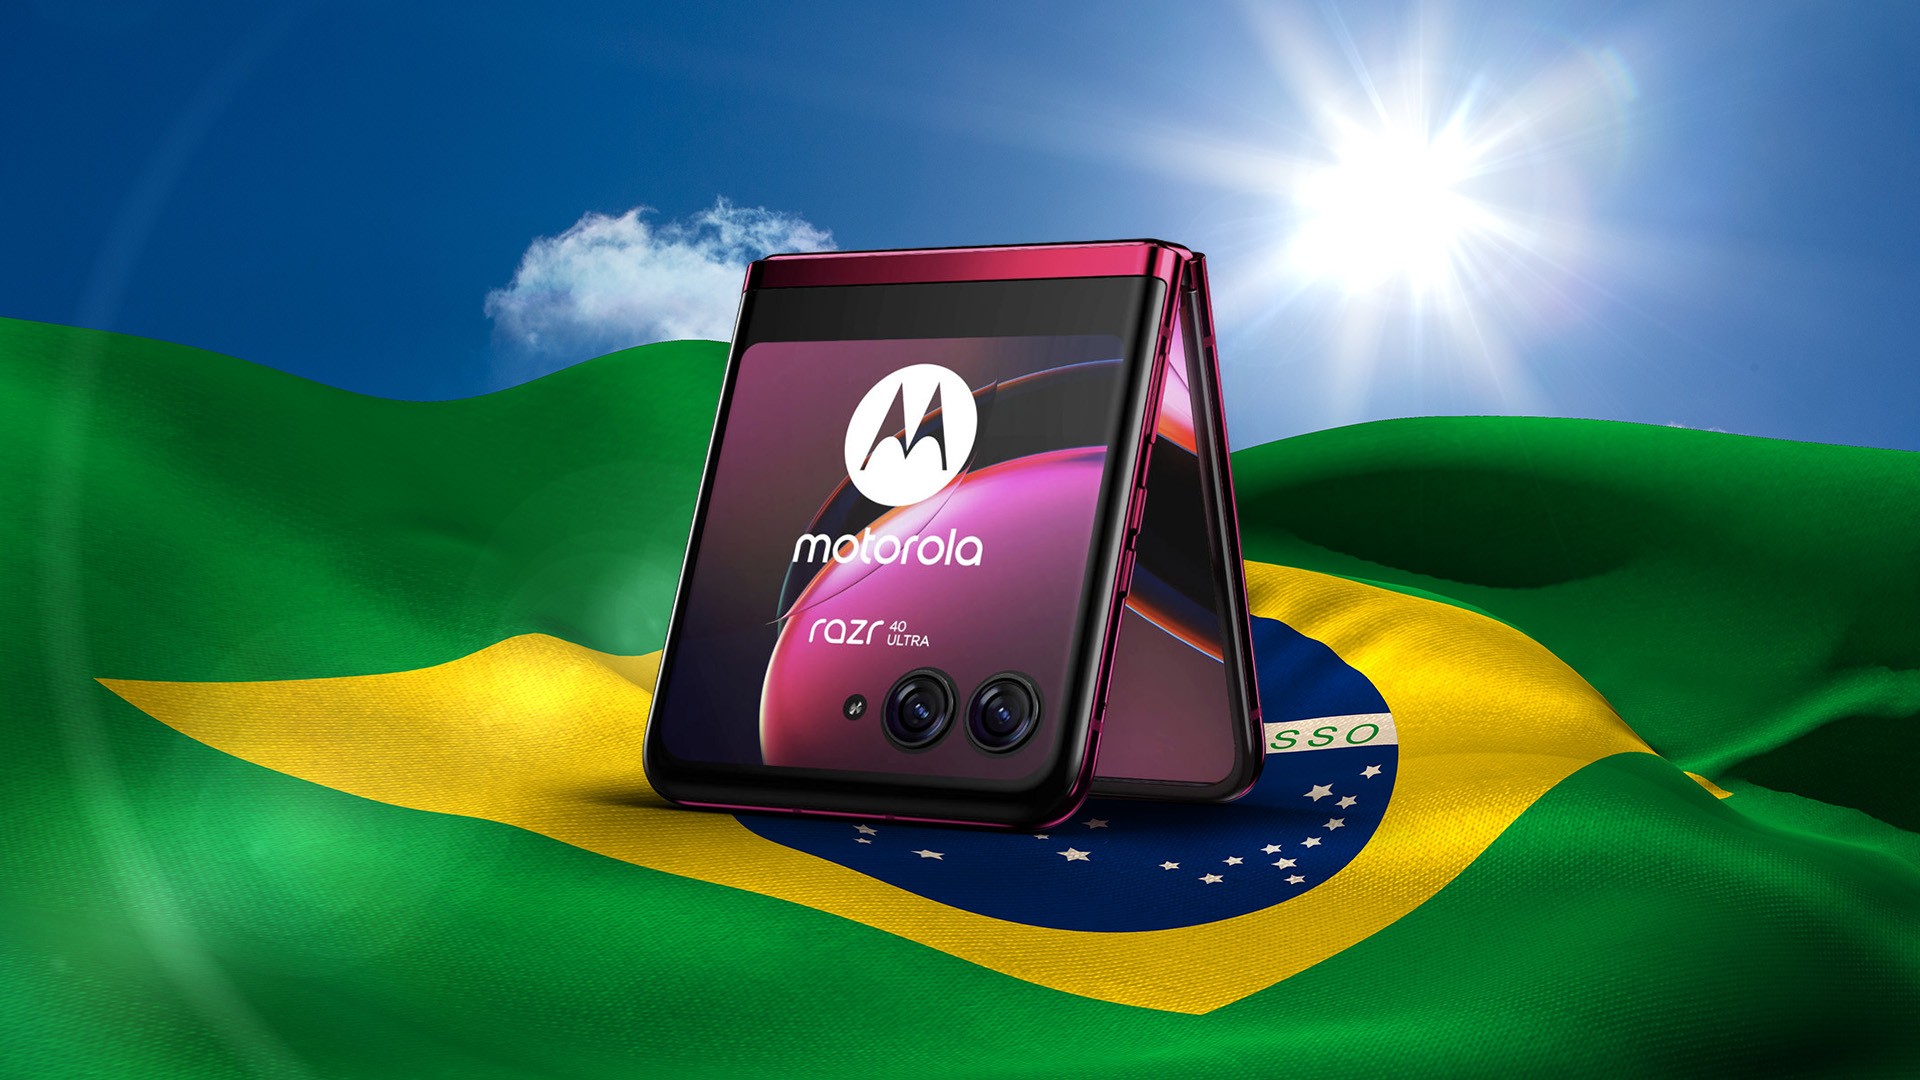 Alerta de oferta: Motorola Moto G32 a partir de R$ 869 